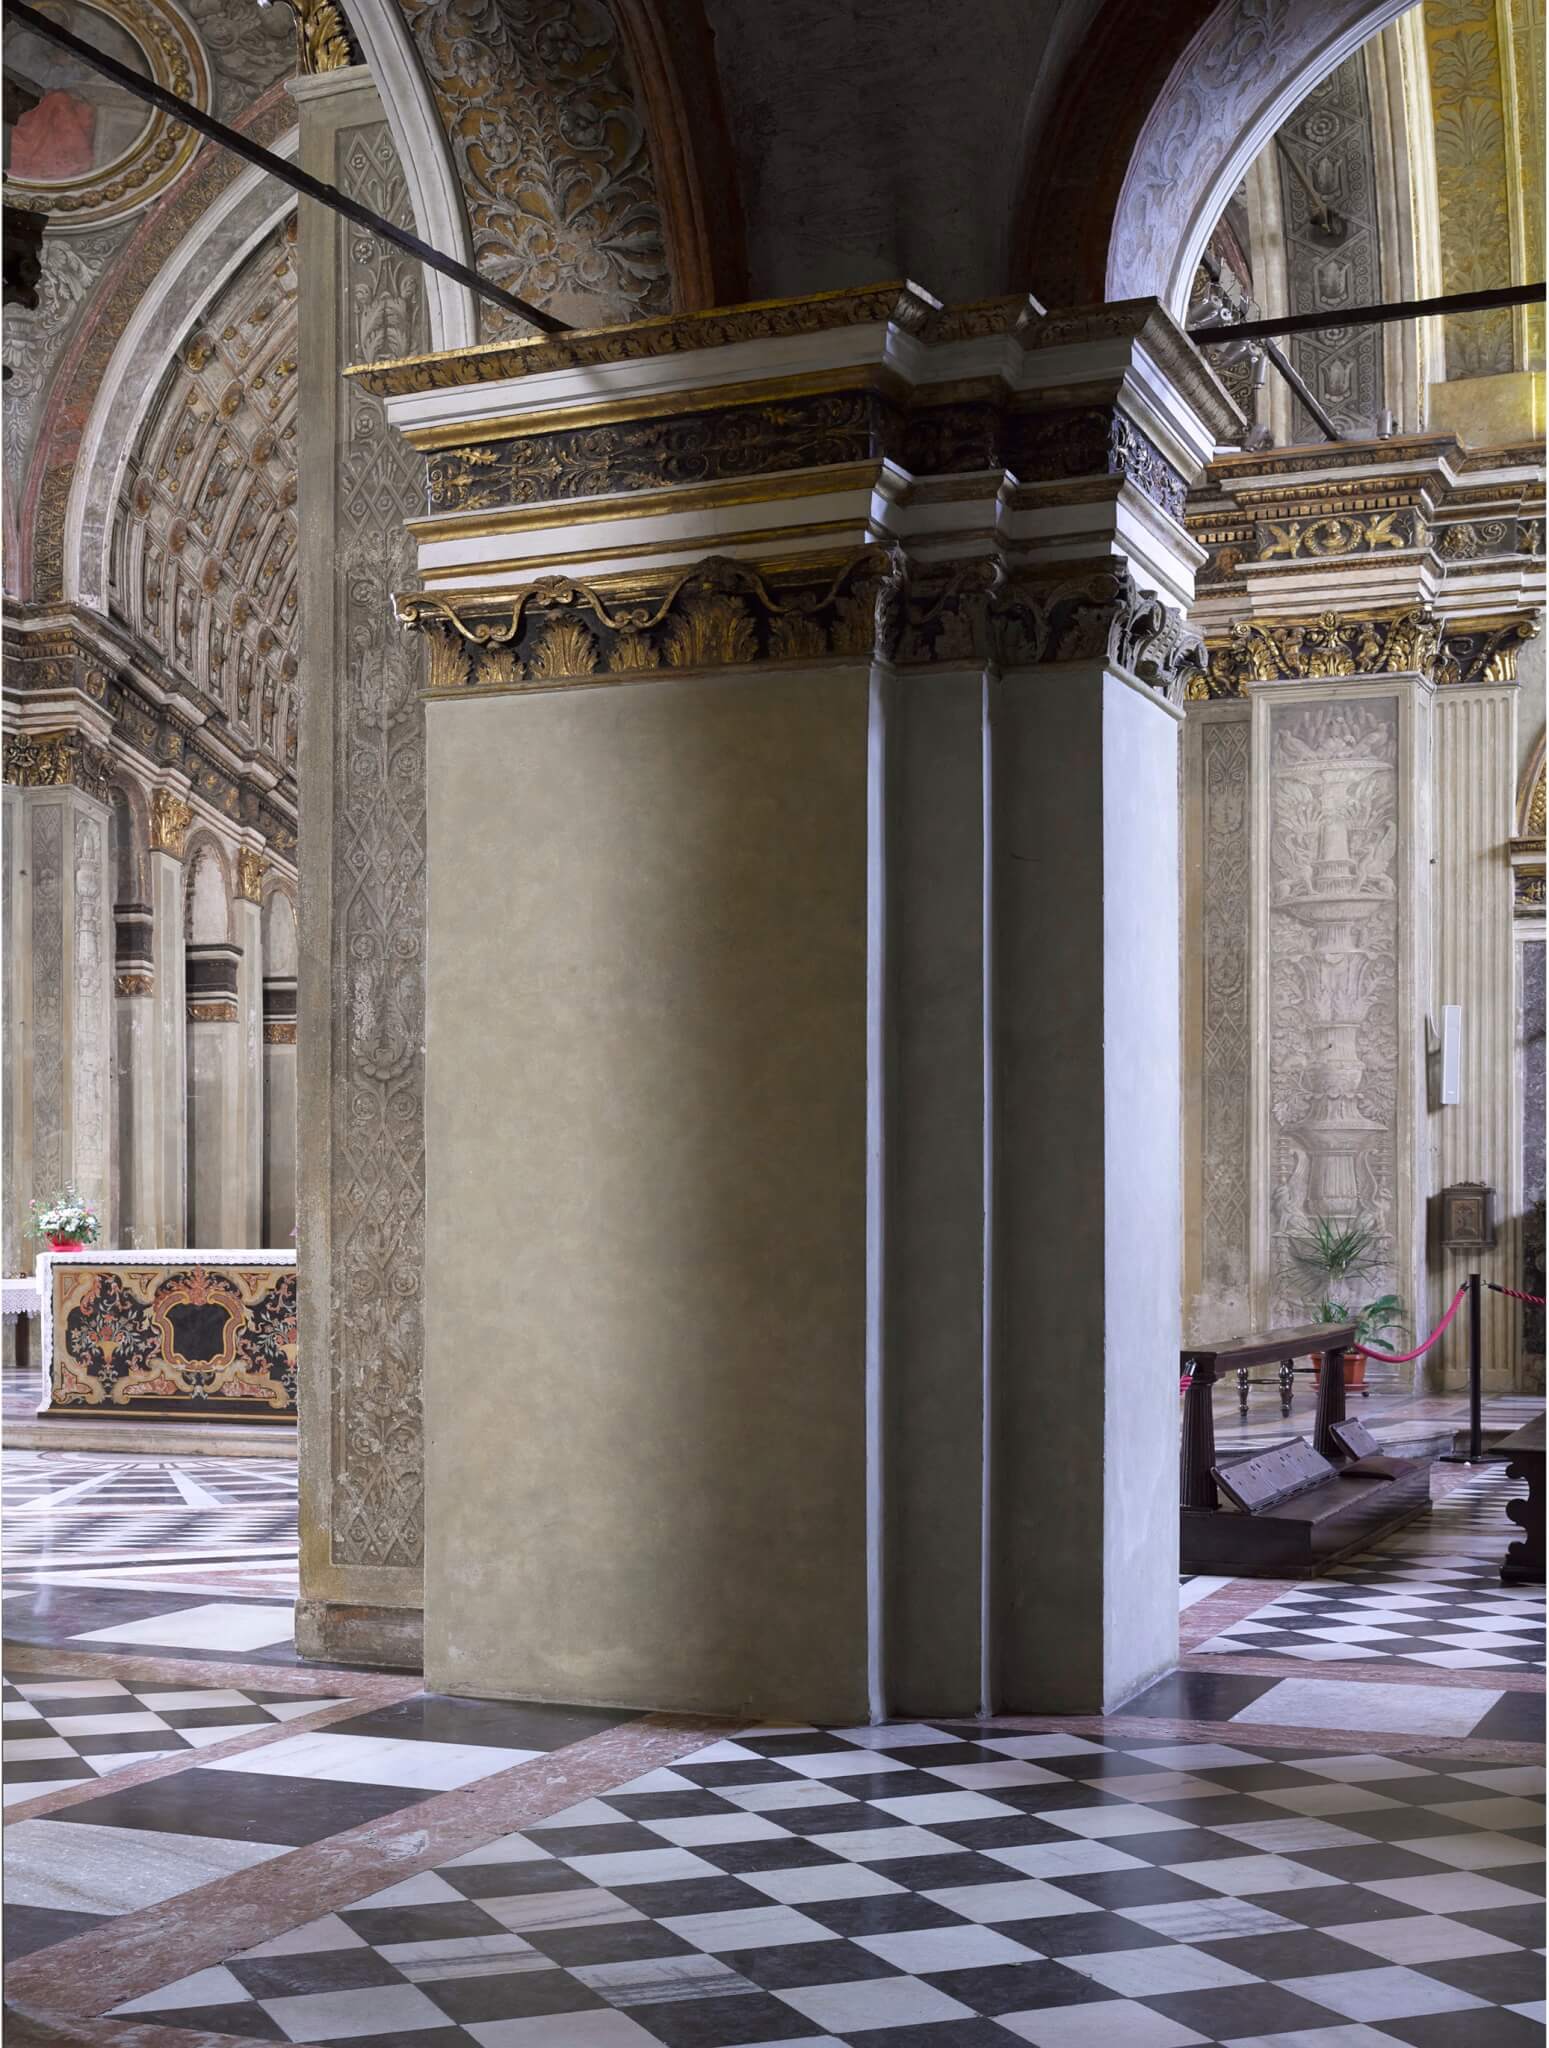 interior view of Santa Maria della Grazie, Italy